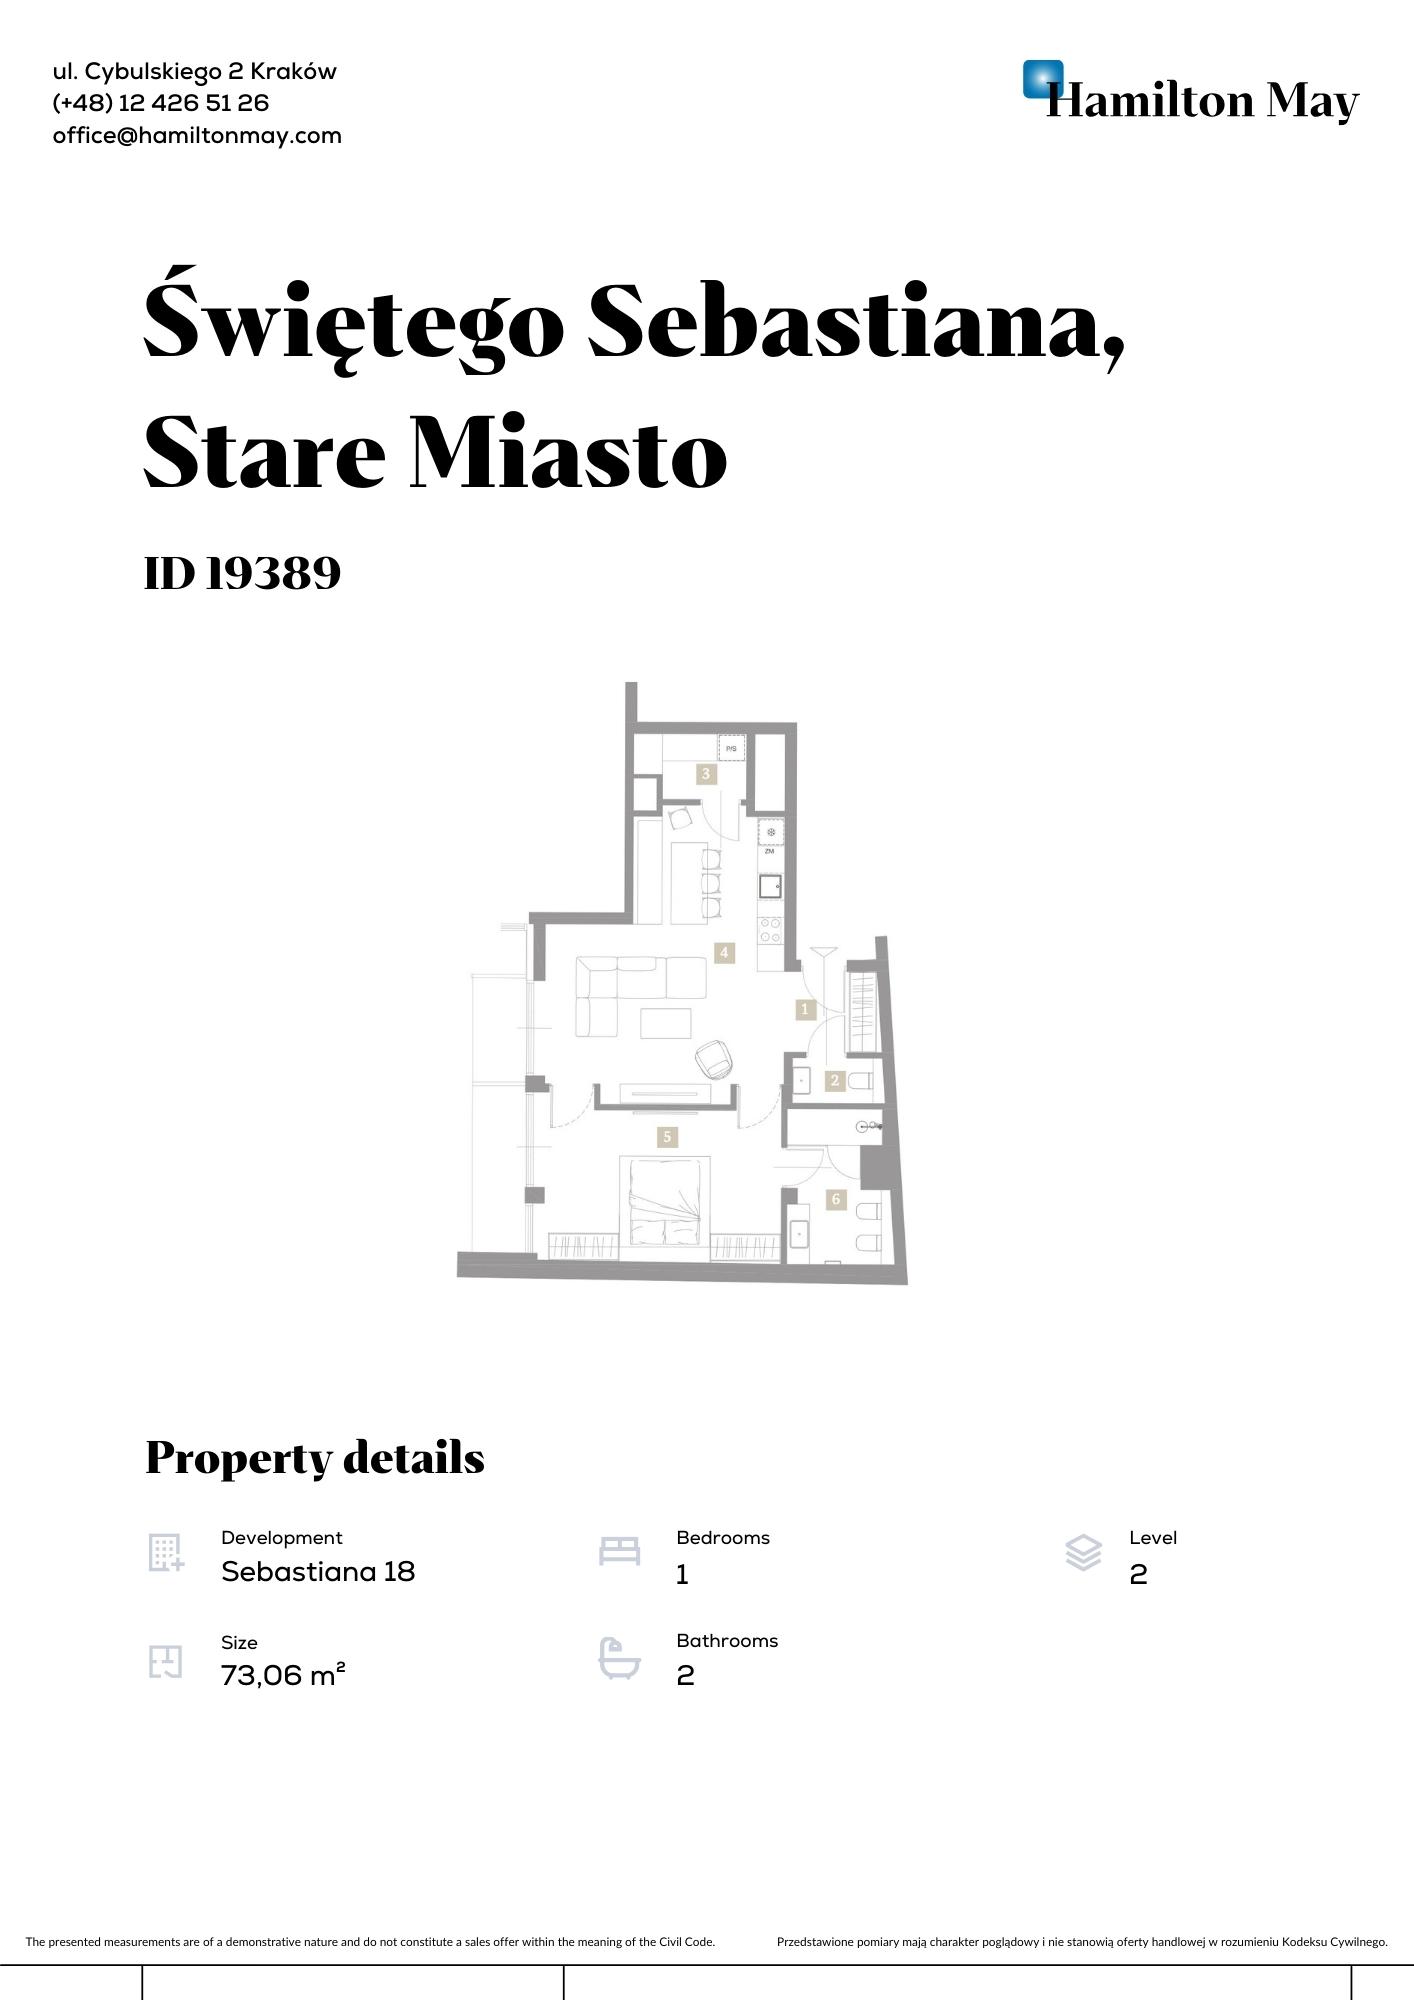 Przestronne mieszkanie z antresolą w prestiżowej inwestycji na ul. Św. Sebastiana 18 - plan